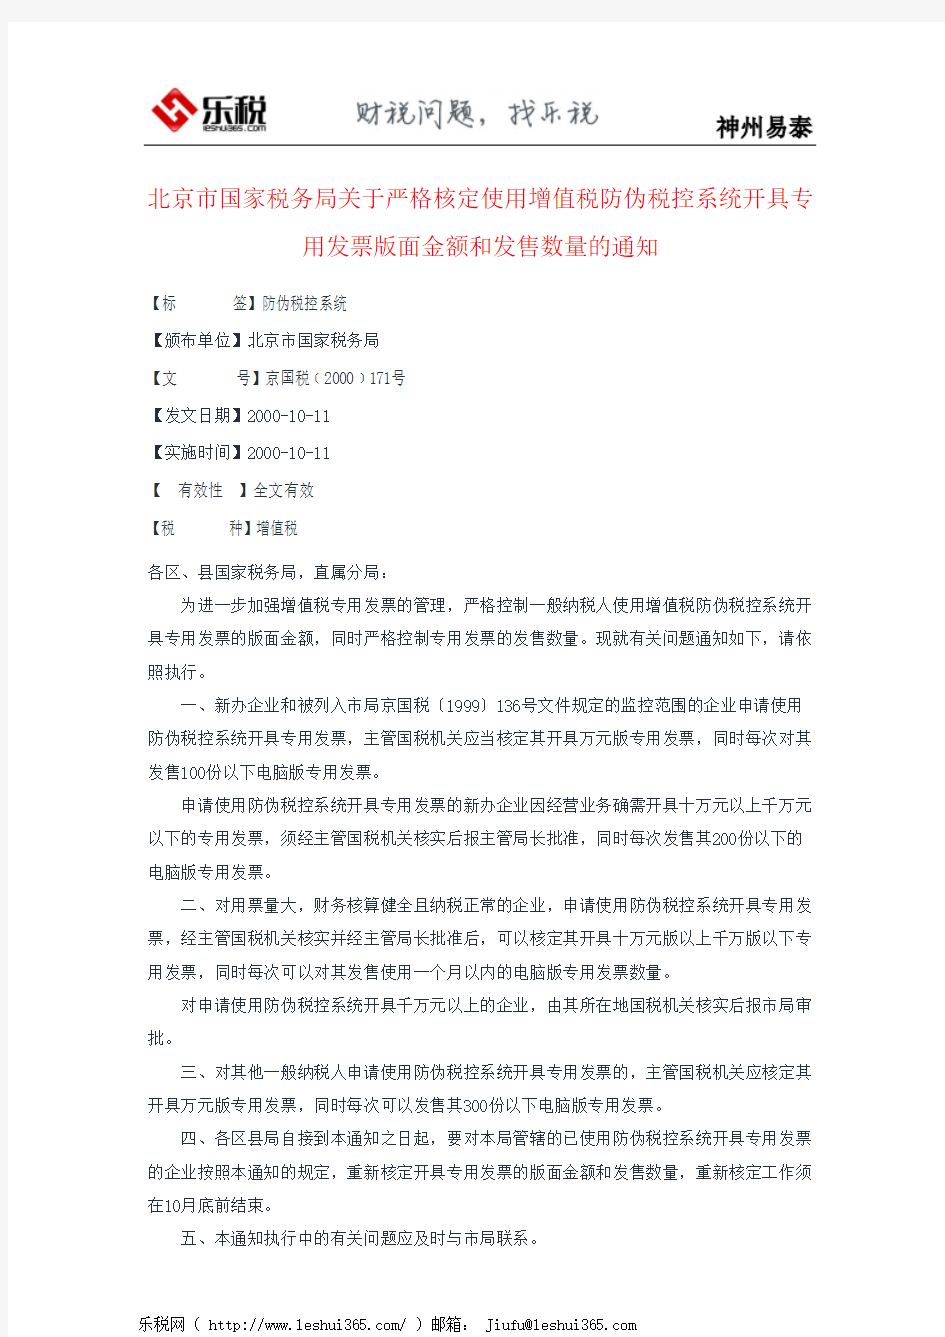 北京市国家税务局关于严格核定使用增值税防伪税控系统开具专用发